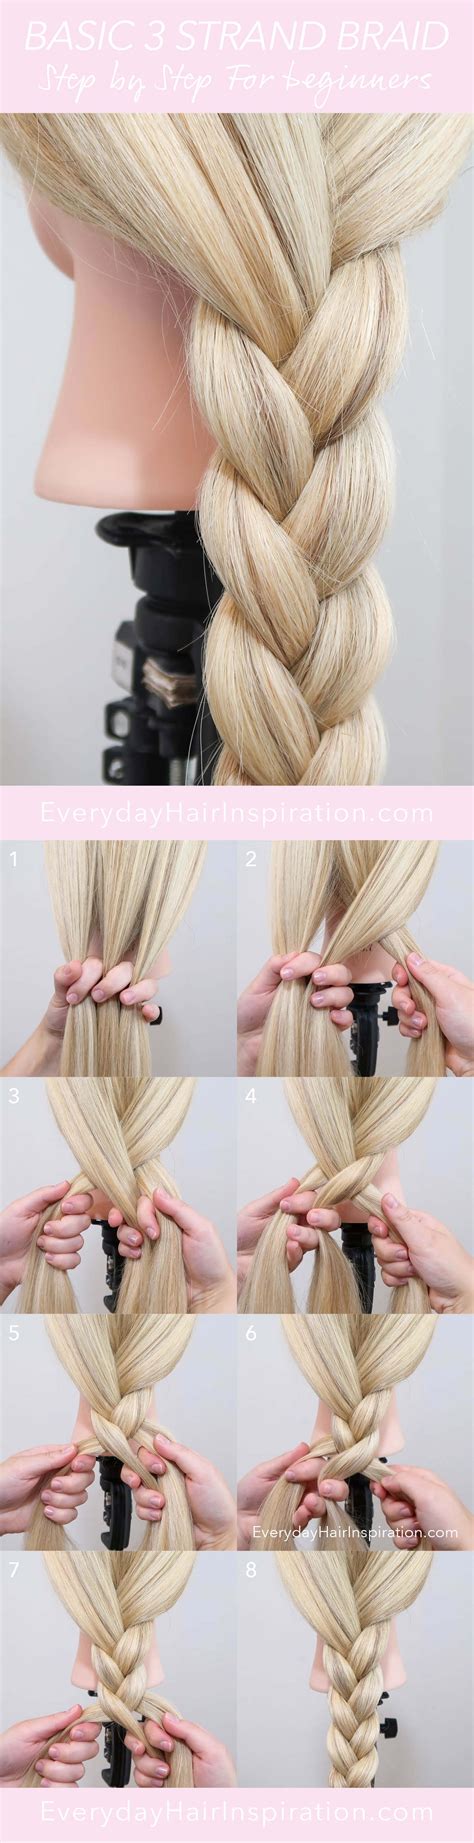 How do you braid easy?